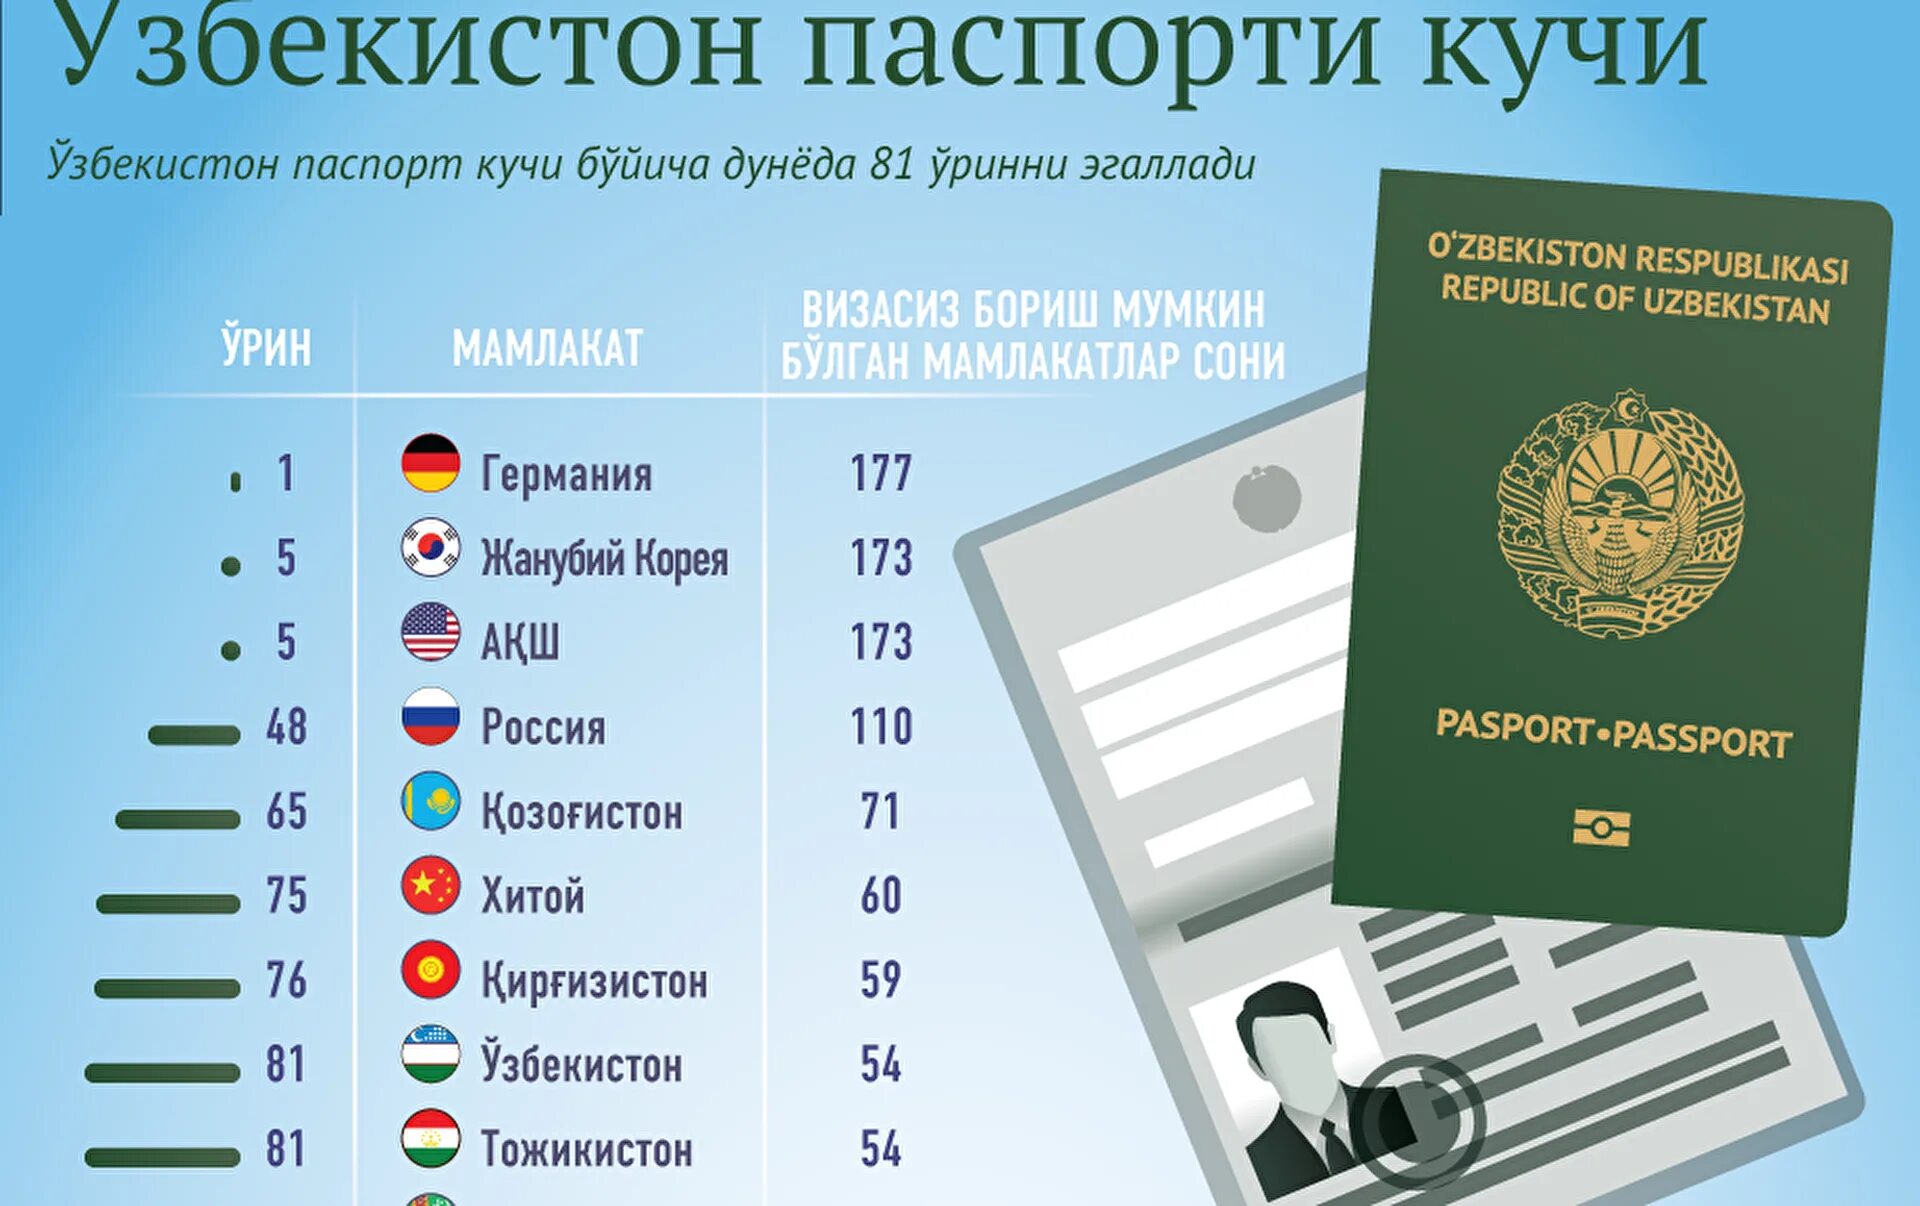 Гражданам таджикистана сколько дней. Виза для граждан Узбекистана. Безвизовые страны для граждан Узбекистана.